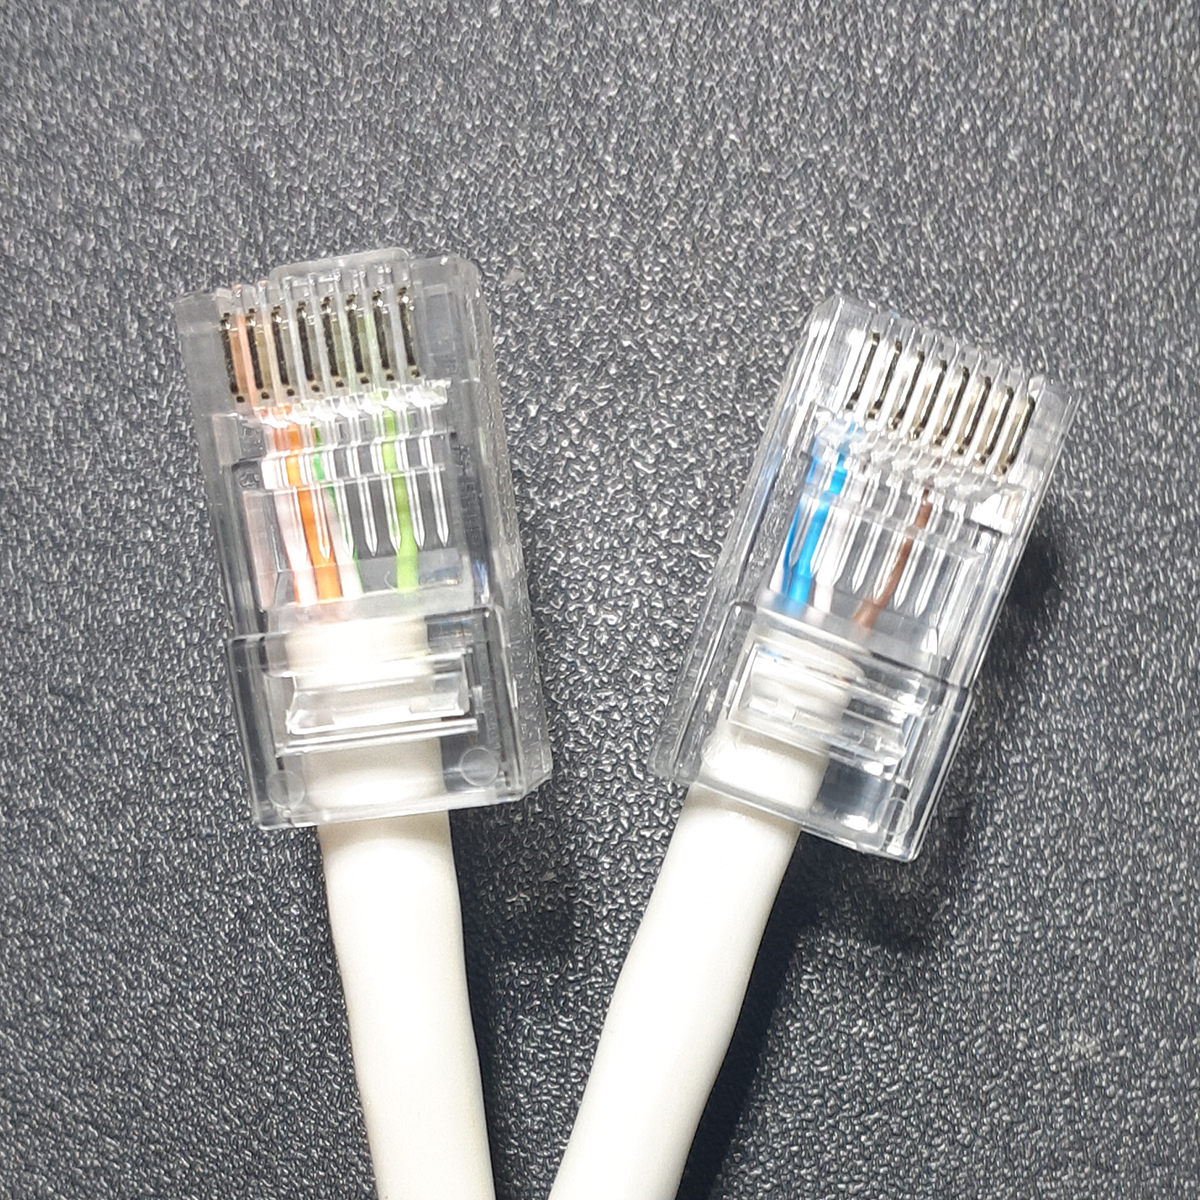 Как создать локальную сеть между двумя компьютерами: кабель, Wi-Fi или роутер